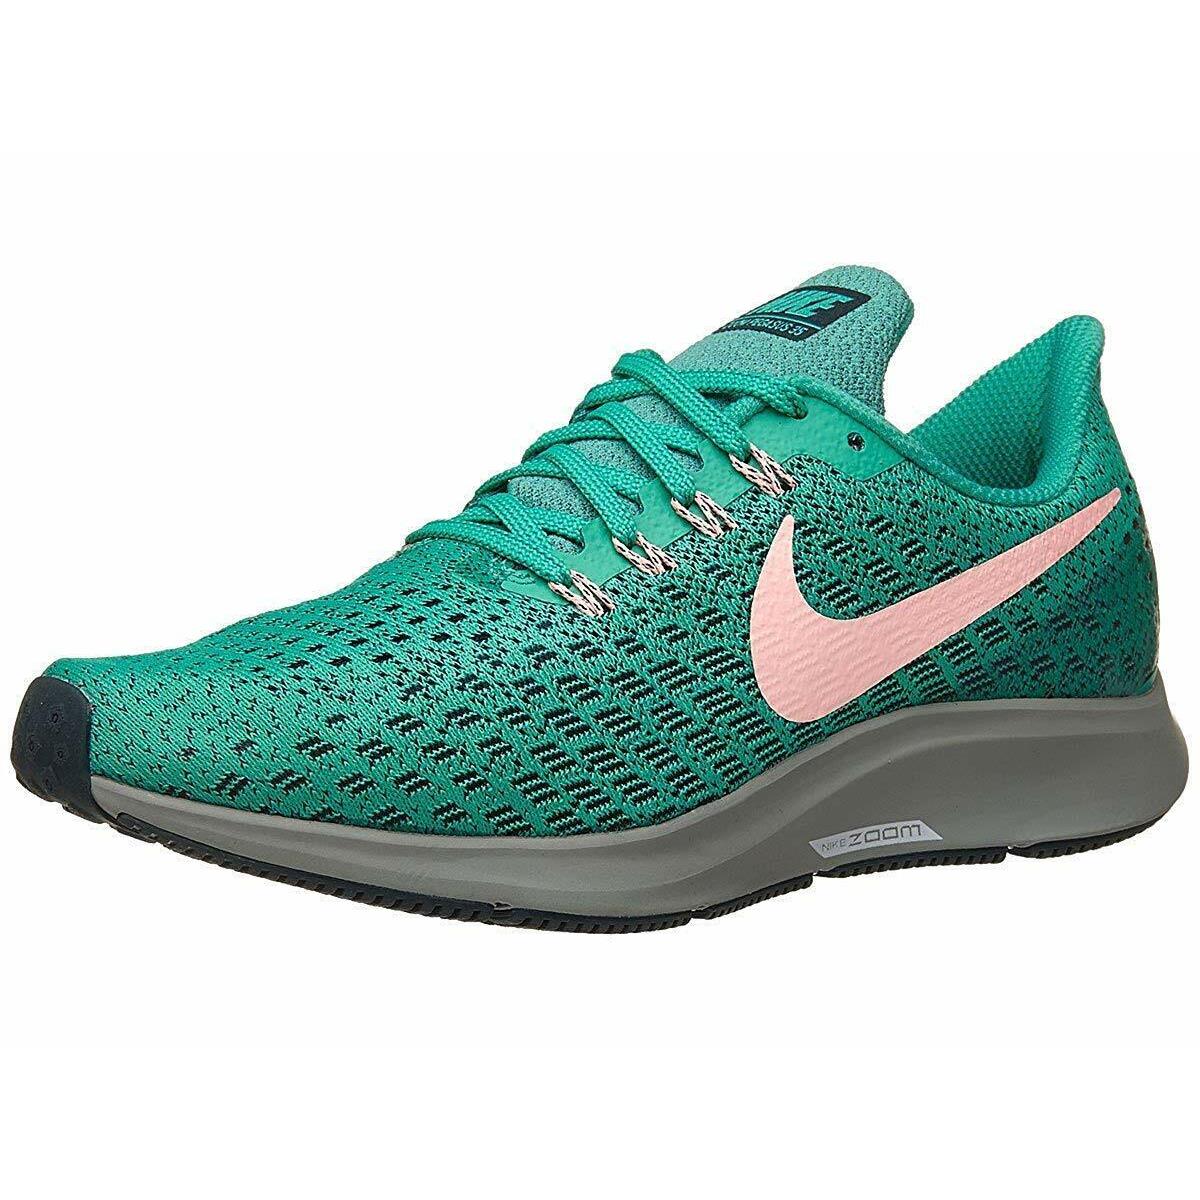 Nike Air Zoom Pegasus 35 Green Pink Running Shoes Women s Size 6.5